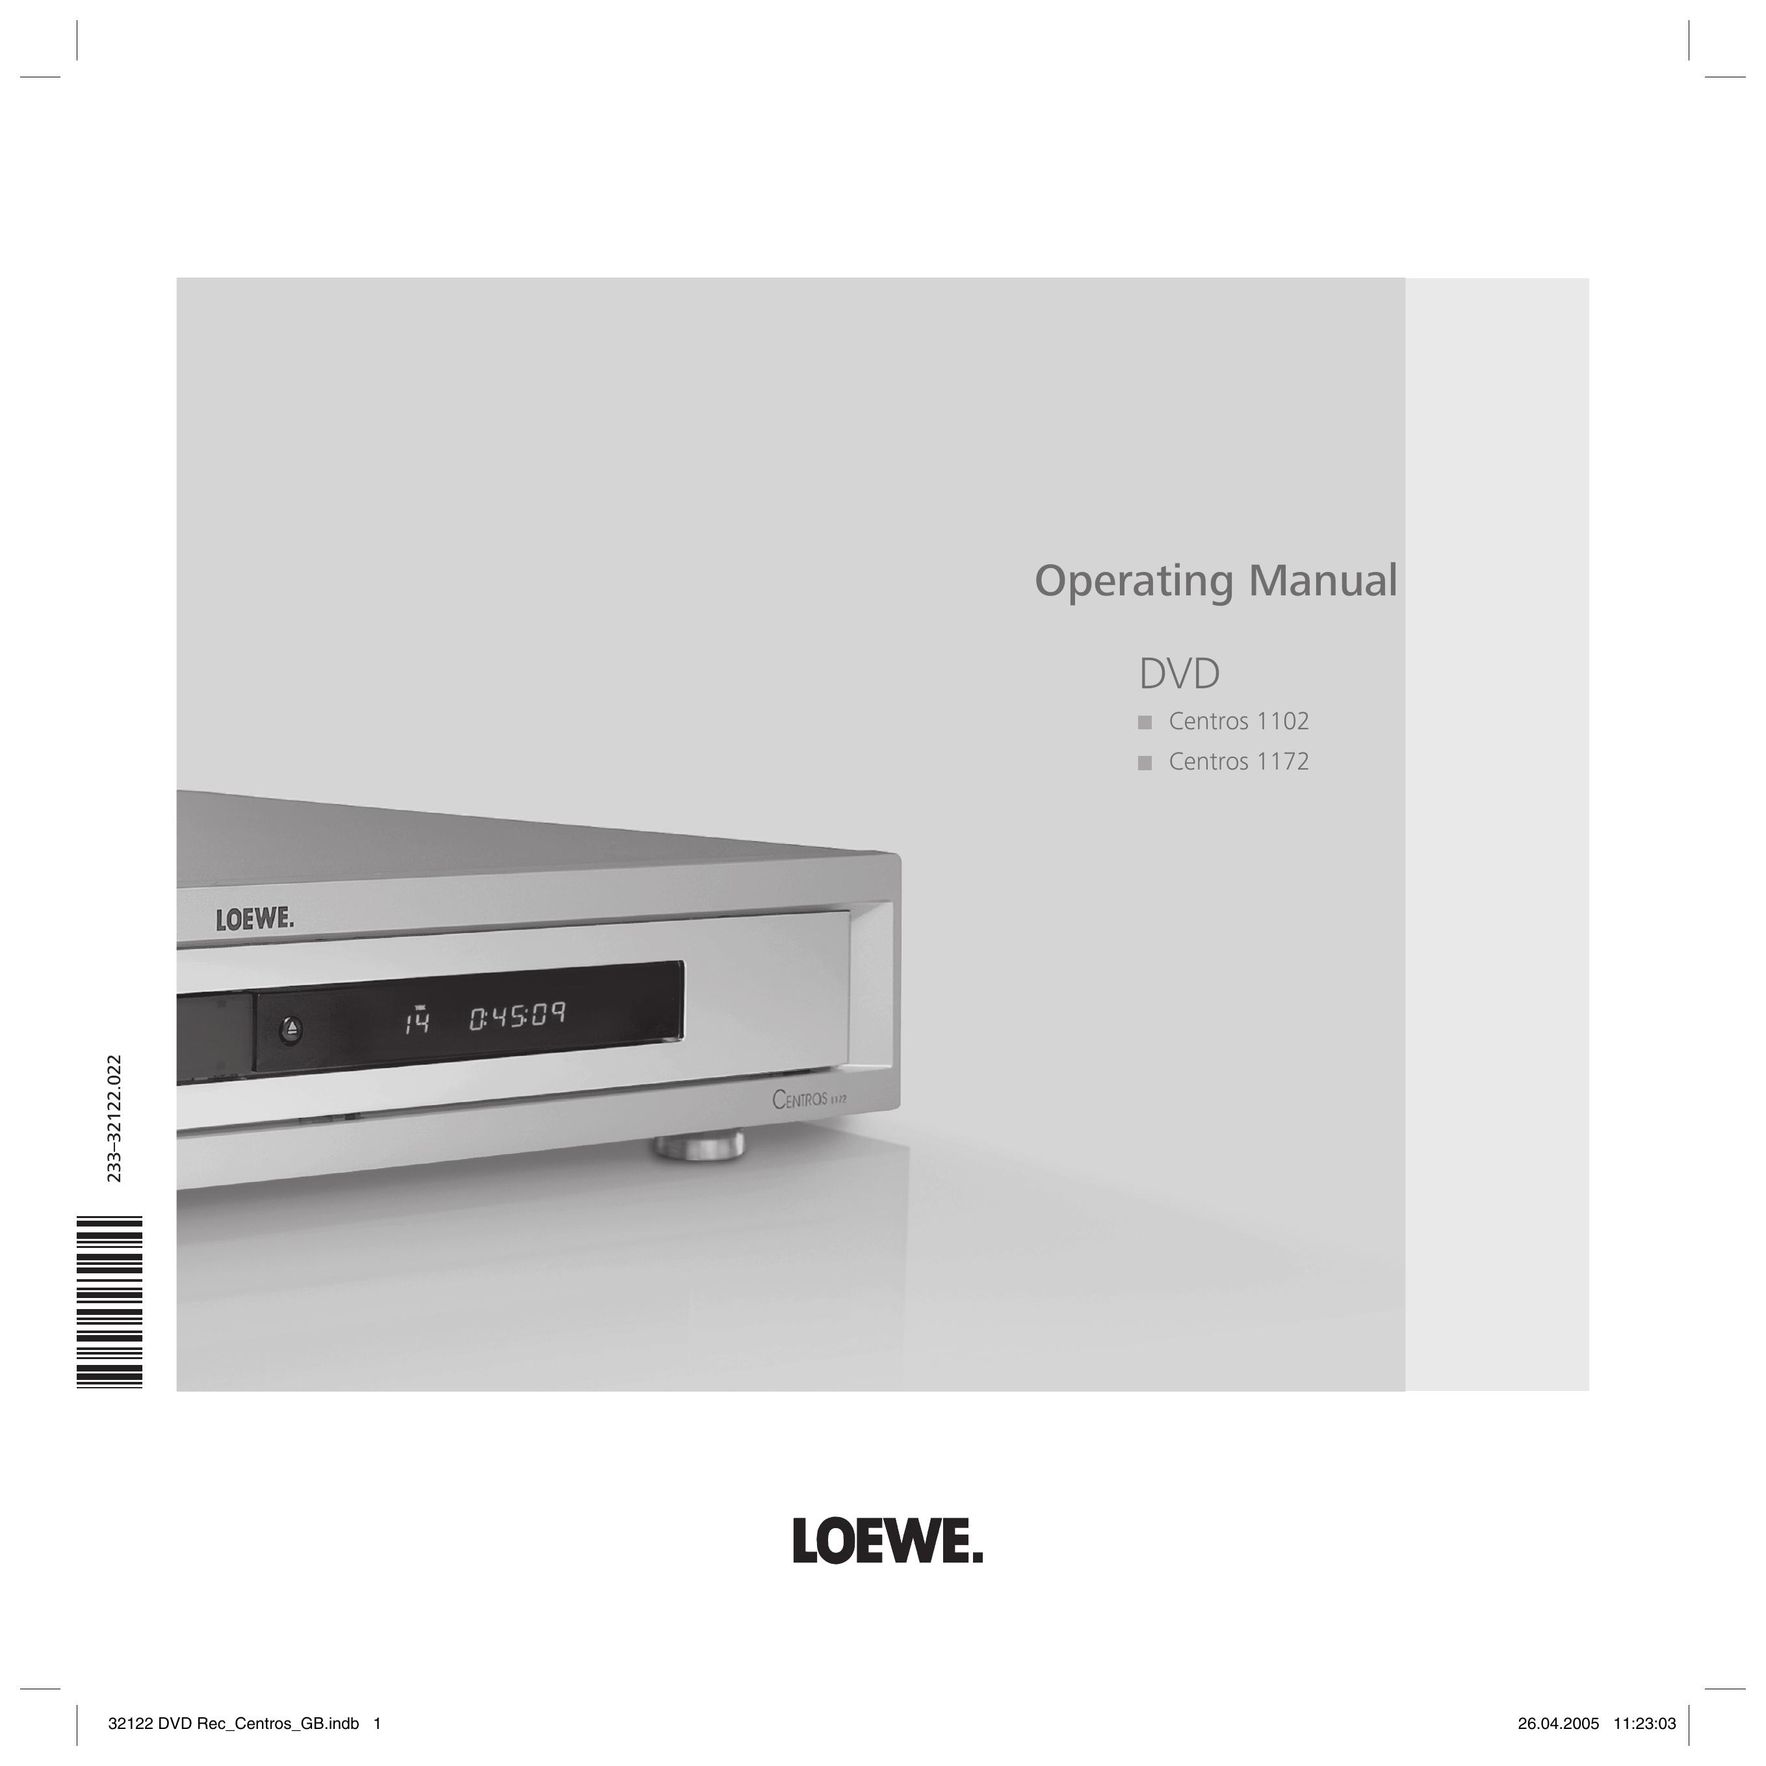 Loewe Centros 1172 DVD Recorder User Manual